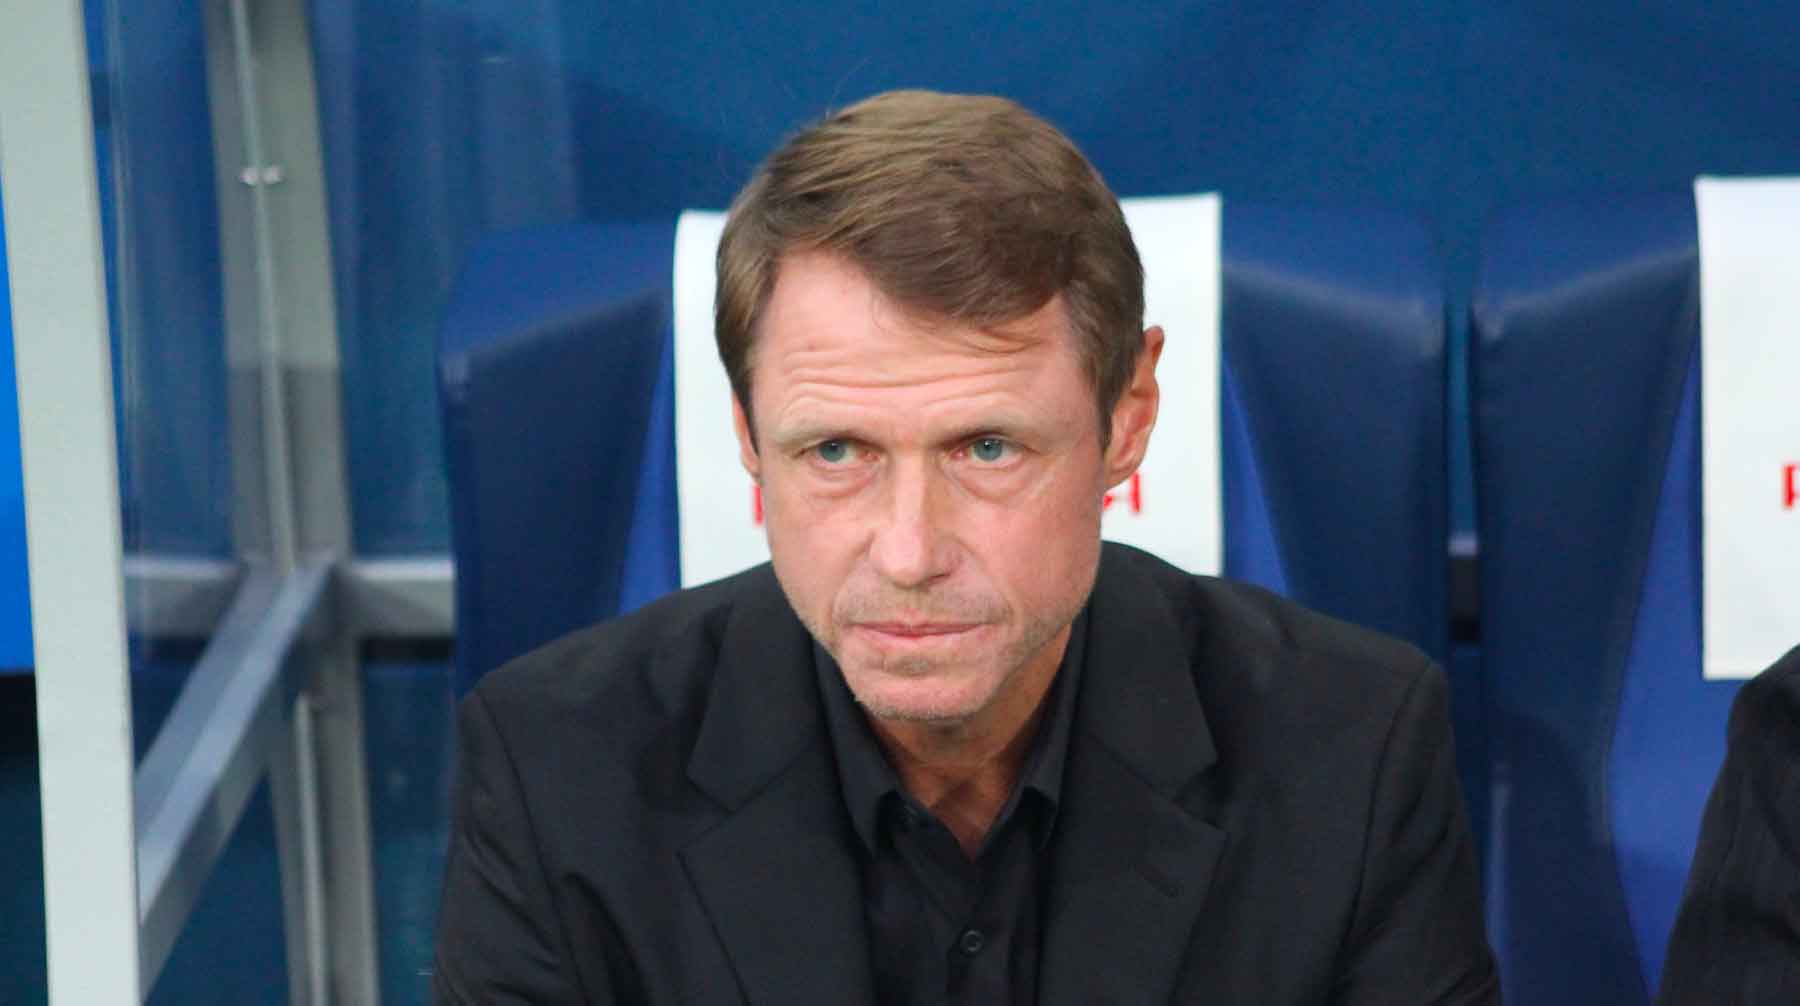 Руководство футбольного клуба приняло его отставку сразу после проигранного матча против «Оренбурга» Олег Кононов